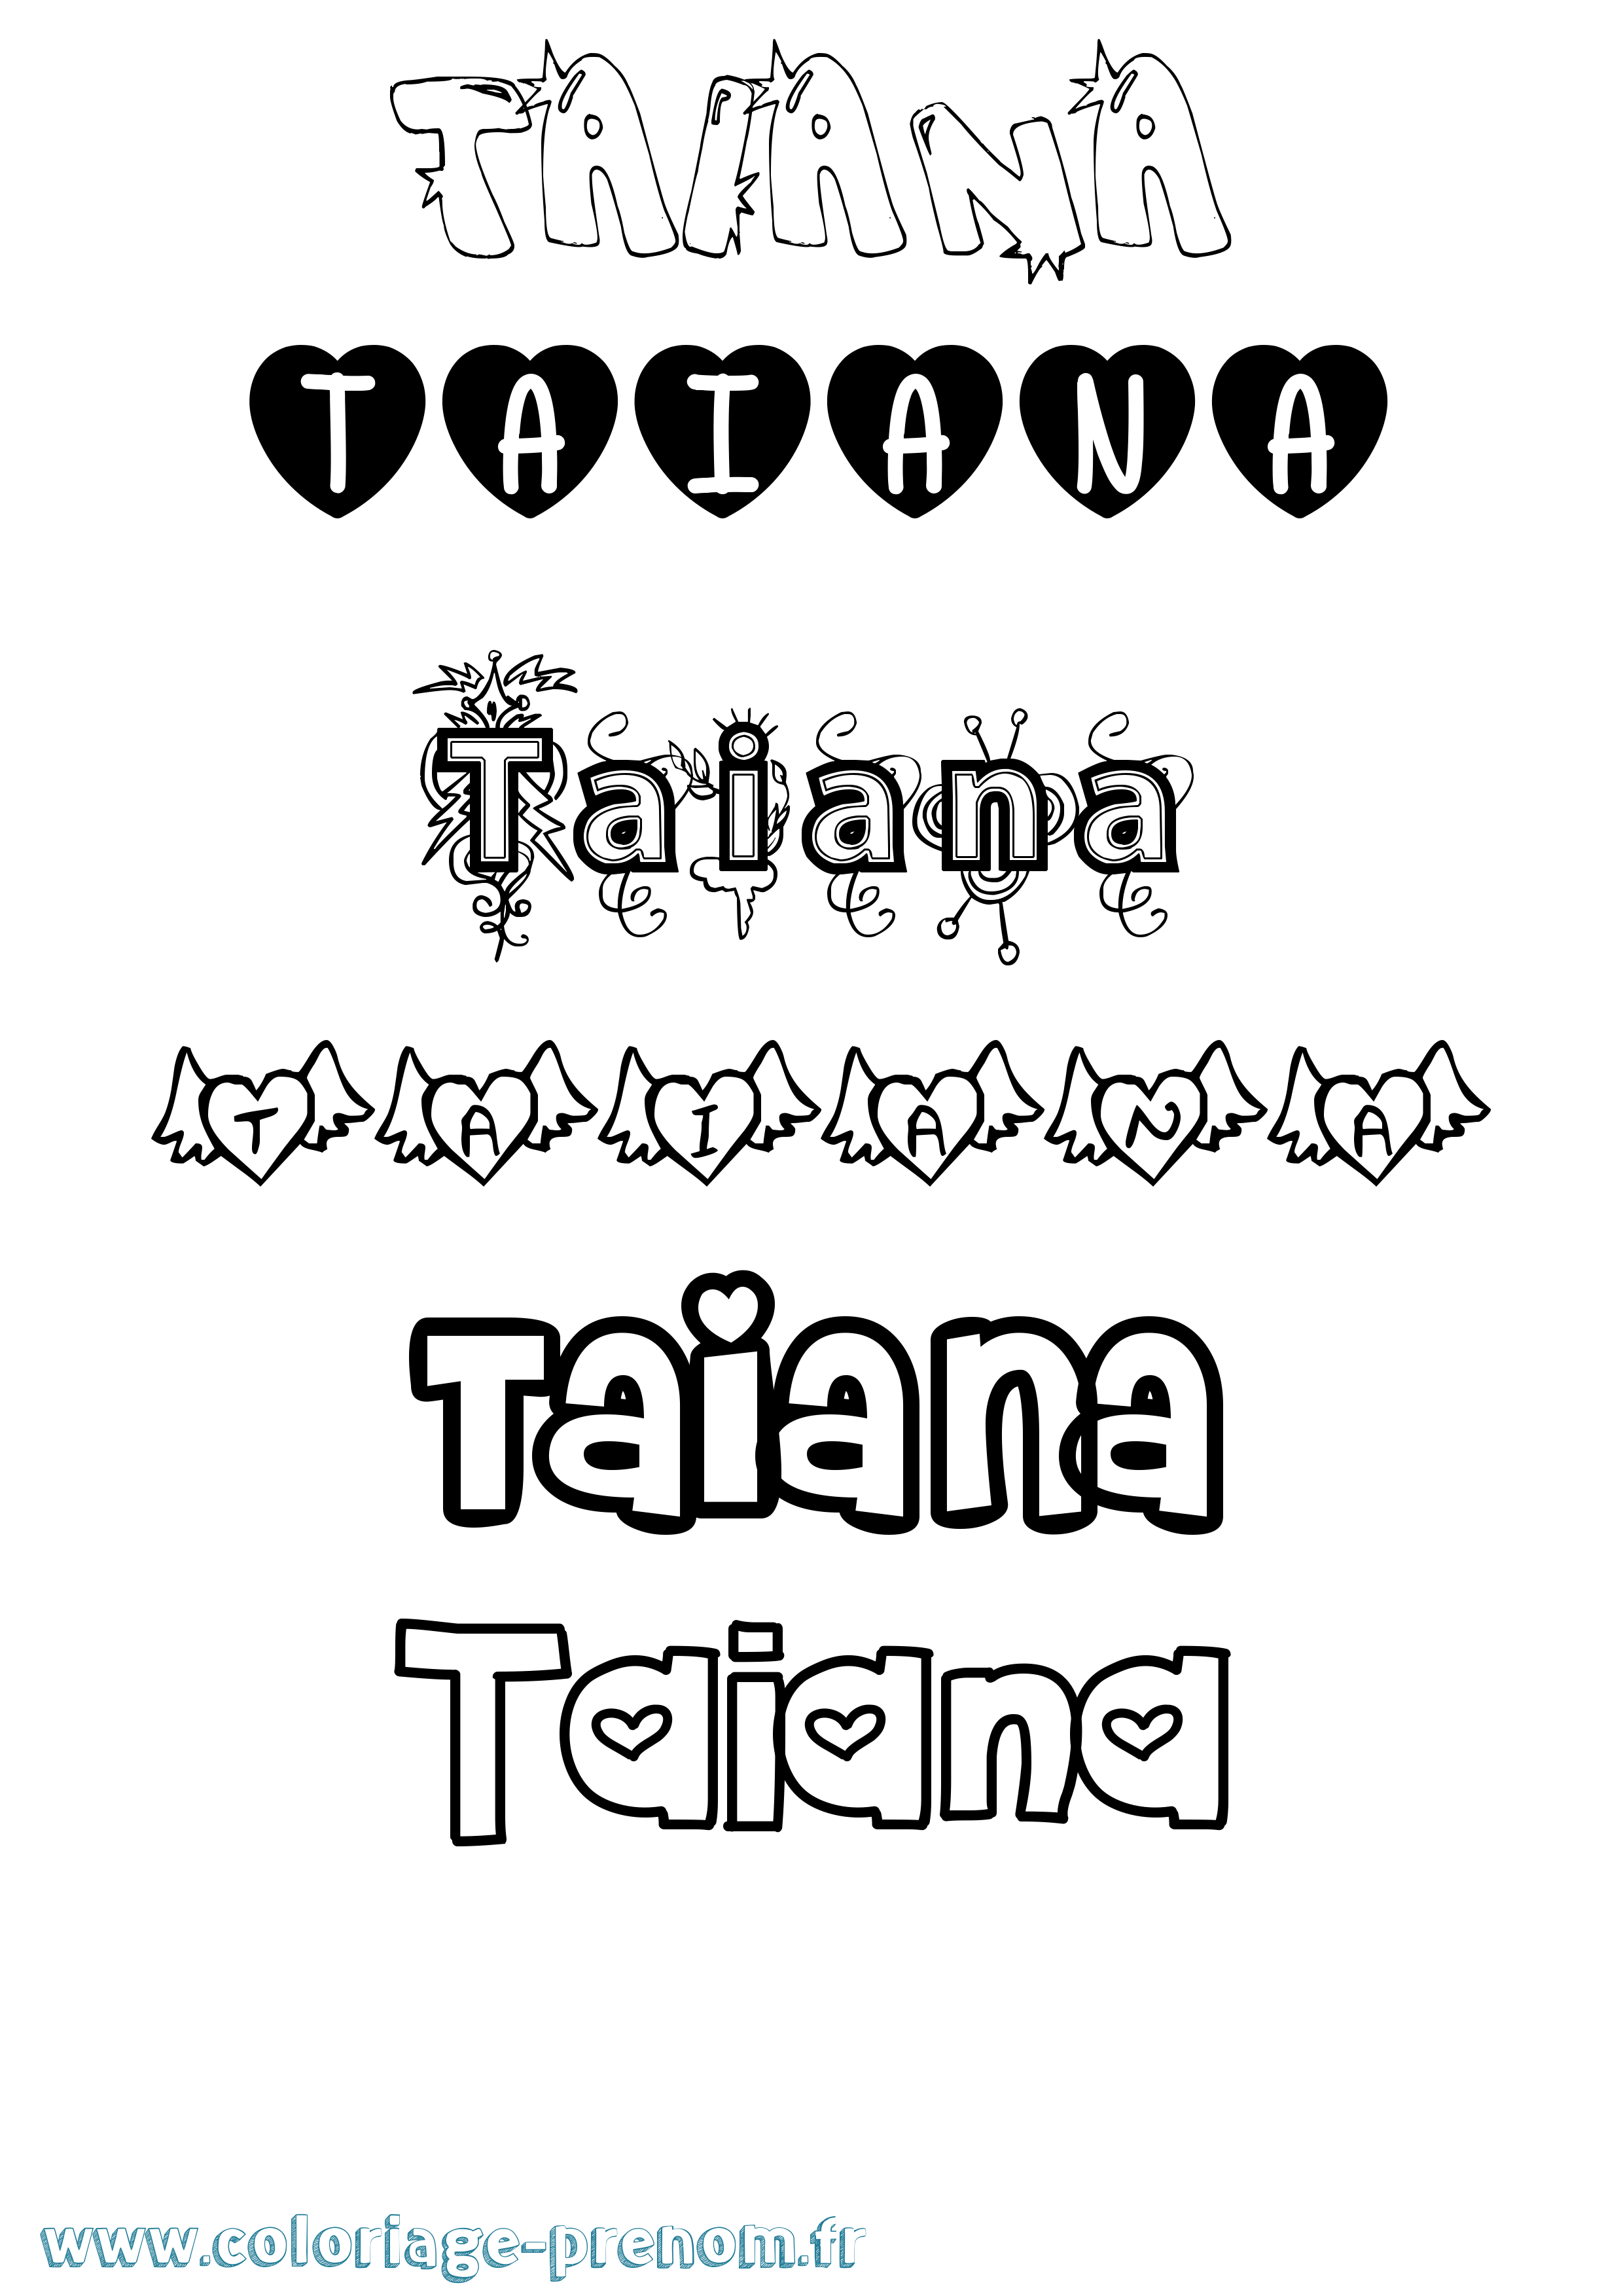 Coloriage prénom Taiana Girly